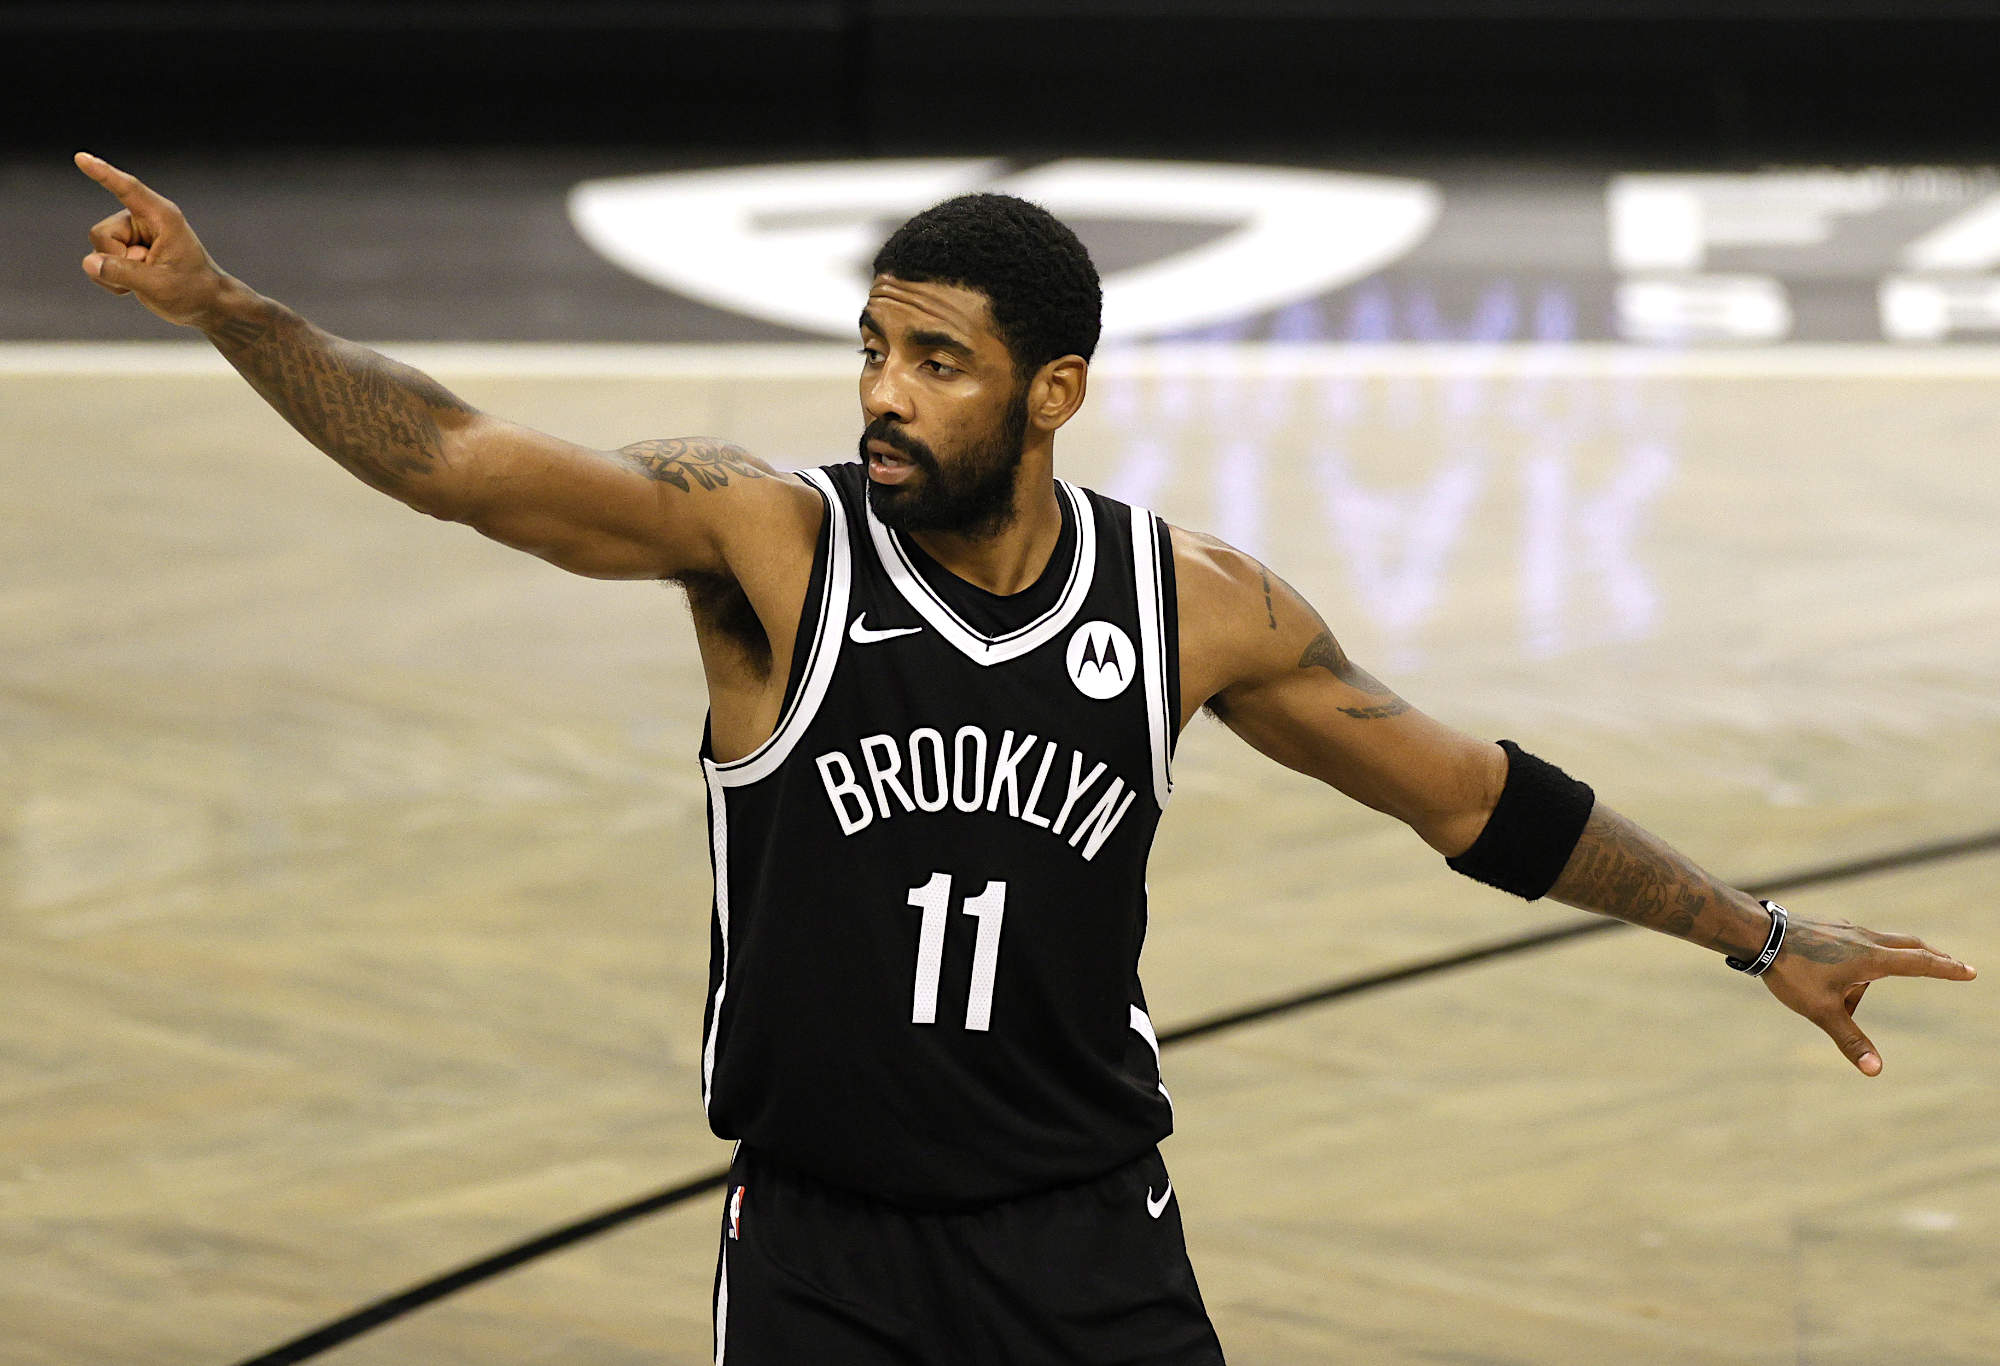 Irving dikirim keluar dari Brooklyn dalam kesepakatan empat pemain saat Nets memperlengkapi kembali dalam pelarian